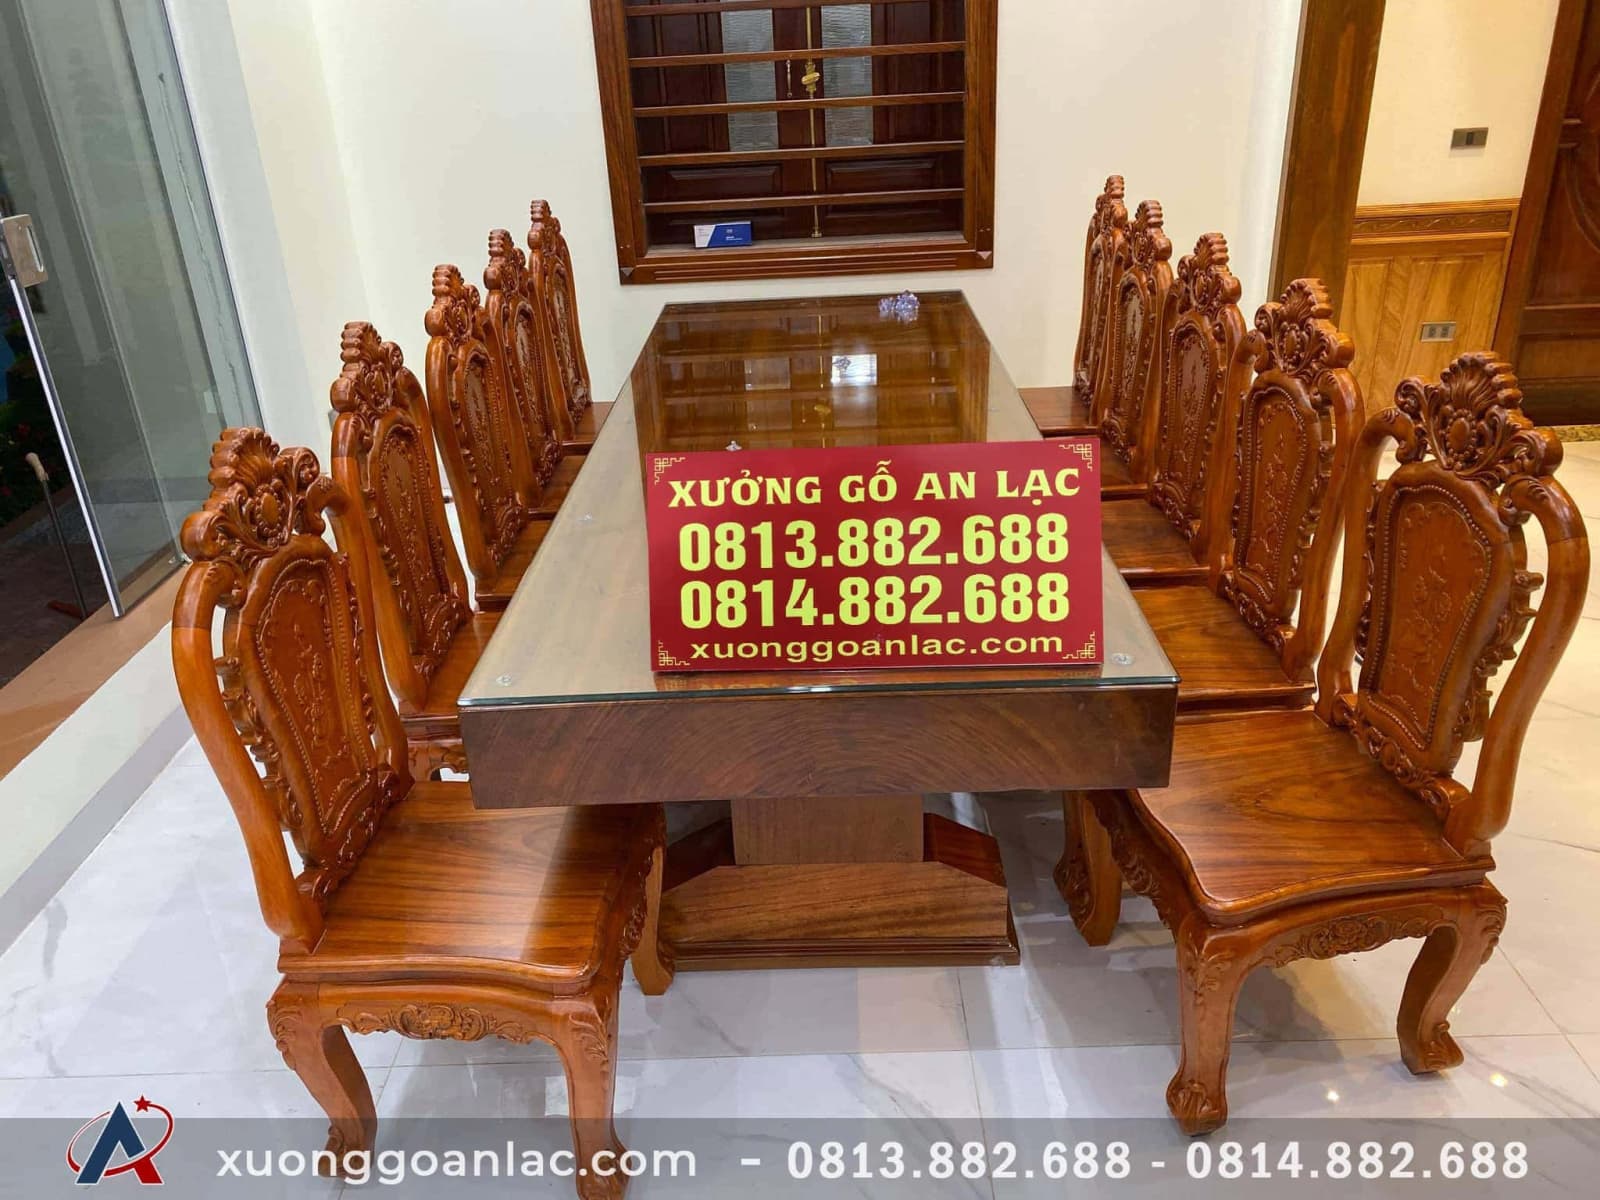 Bàn ghế ăn gỗ gõ đỏ là một lựa chọn tuyệt vời cho những người yêu thích phong cách hiện đại. Hãy cùng chiêm ngưỡng những hình ảnh đẹp mắt về bộ bàn ghế gỗ gõ đỏ và tham khảo thông tin chi tiết để trang trí nội thất gia đình của bạn.